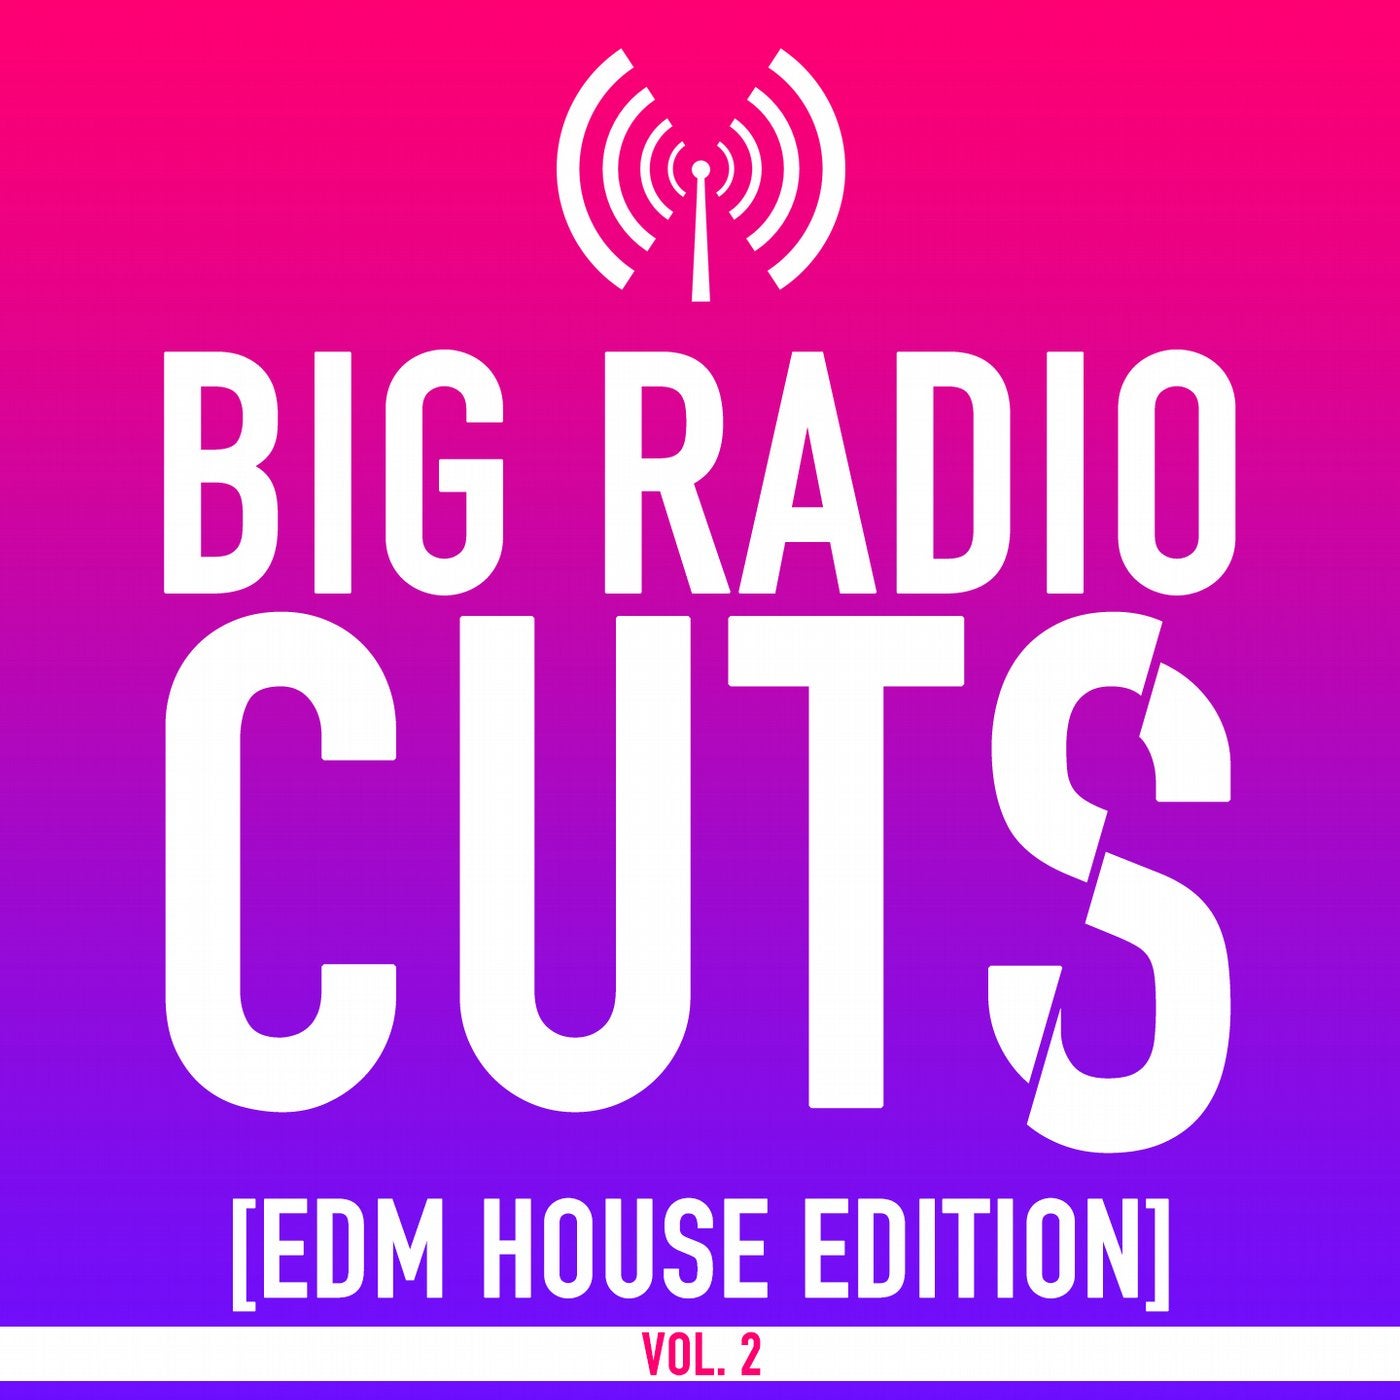 Big Radio Cuts (EDM House Edition), Vol. 2